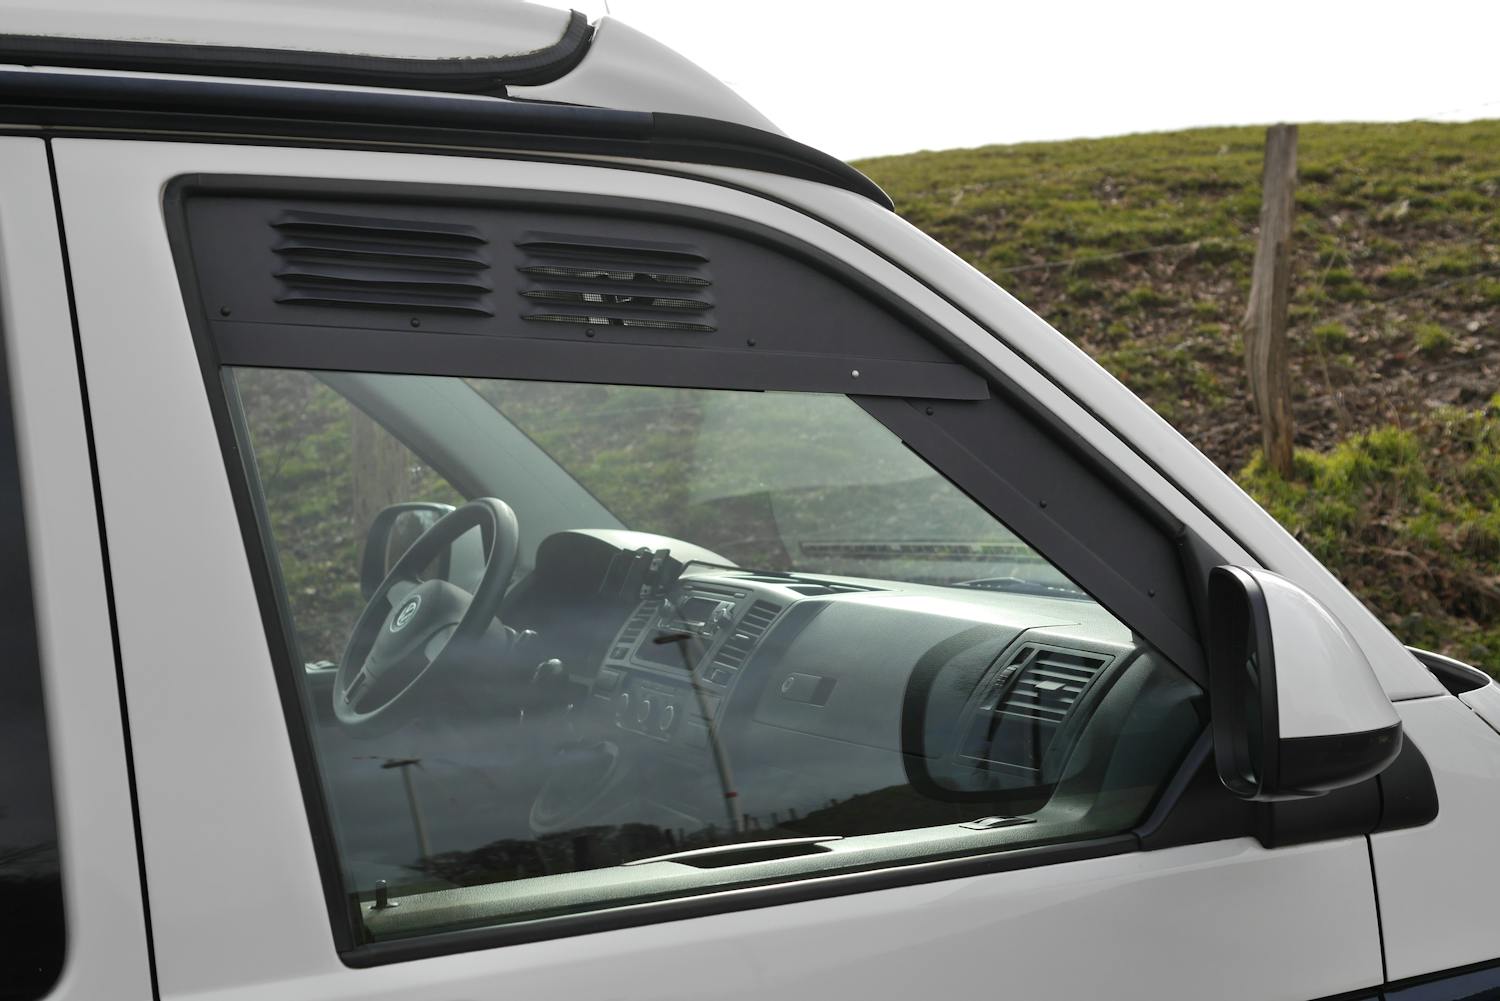 Frische Luft beim Parken im Sommer und Übernachten: Das Lüftungsgitter fürs Cockpit im VW T6.1, T6 und T5